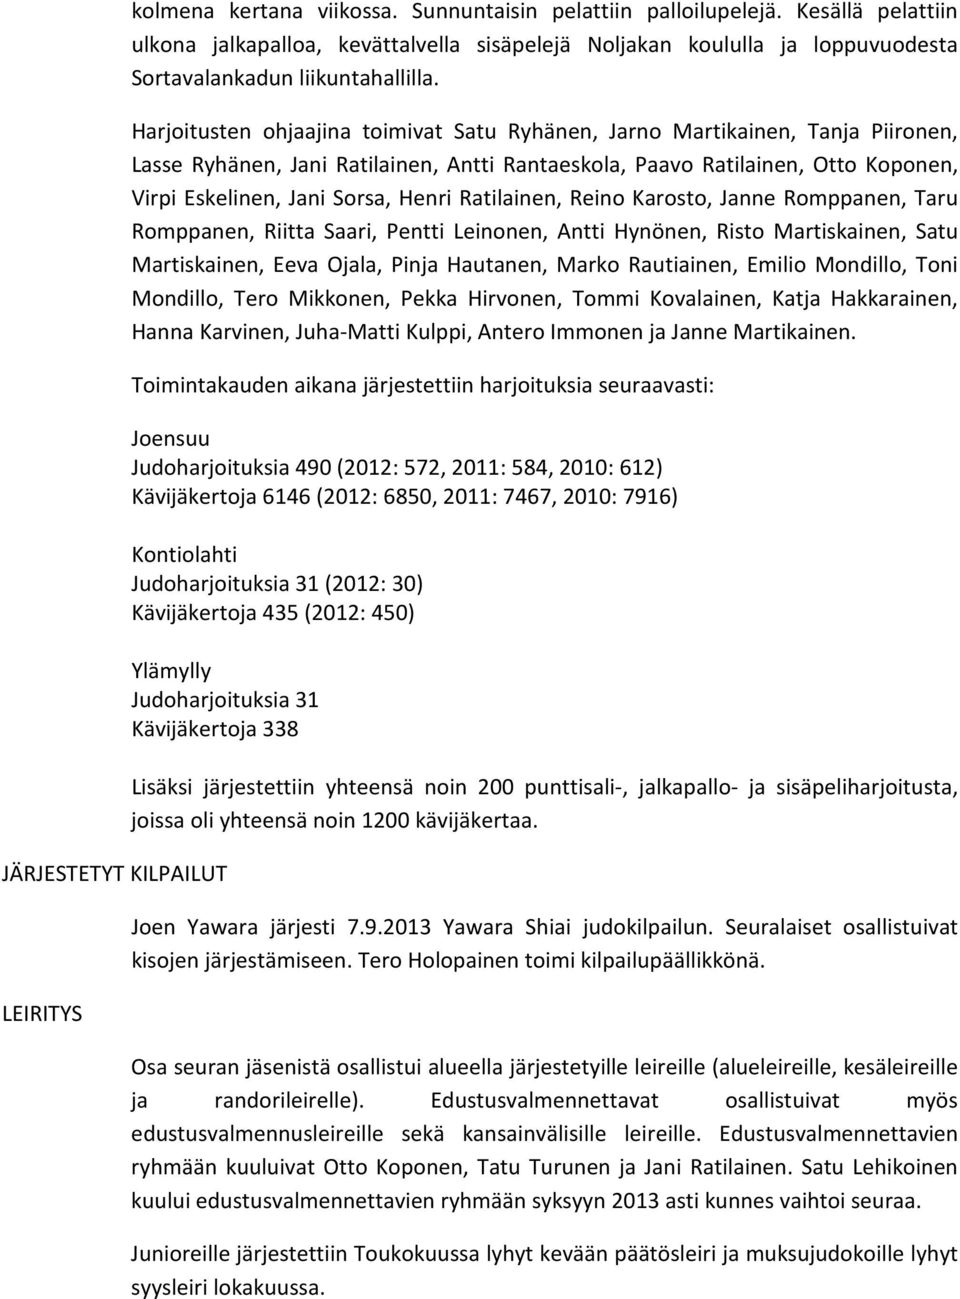 Ratilainen, Reino Karosto, Janne Romppanen, Taru Romppanen, Riitta Saari, Pentti Leinonen, Antti Hynönen, Risto Martiskainen, Satu Martiskainen, Eeva Ojala, Pinja Hautanen, Marko Rautiainen, Emilio